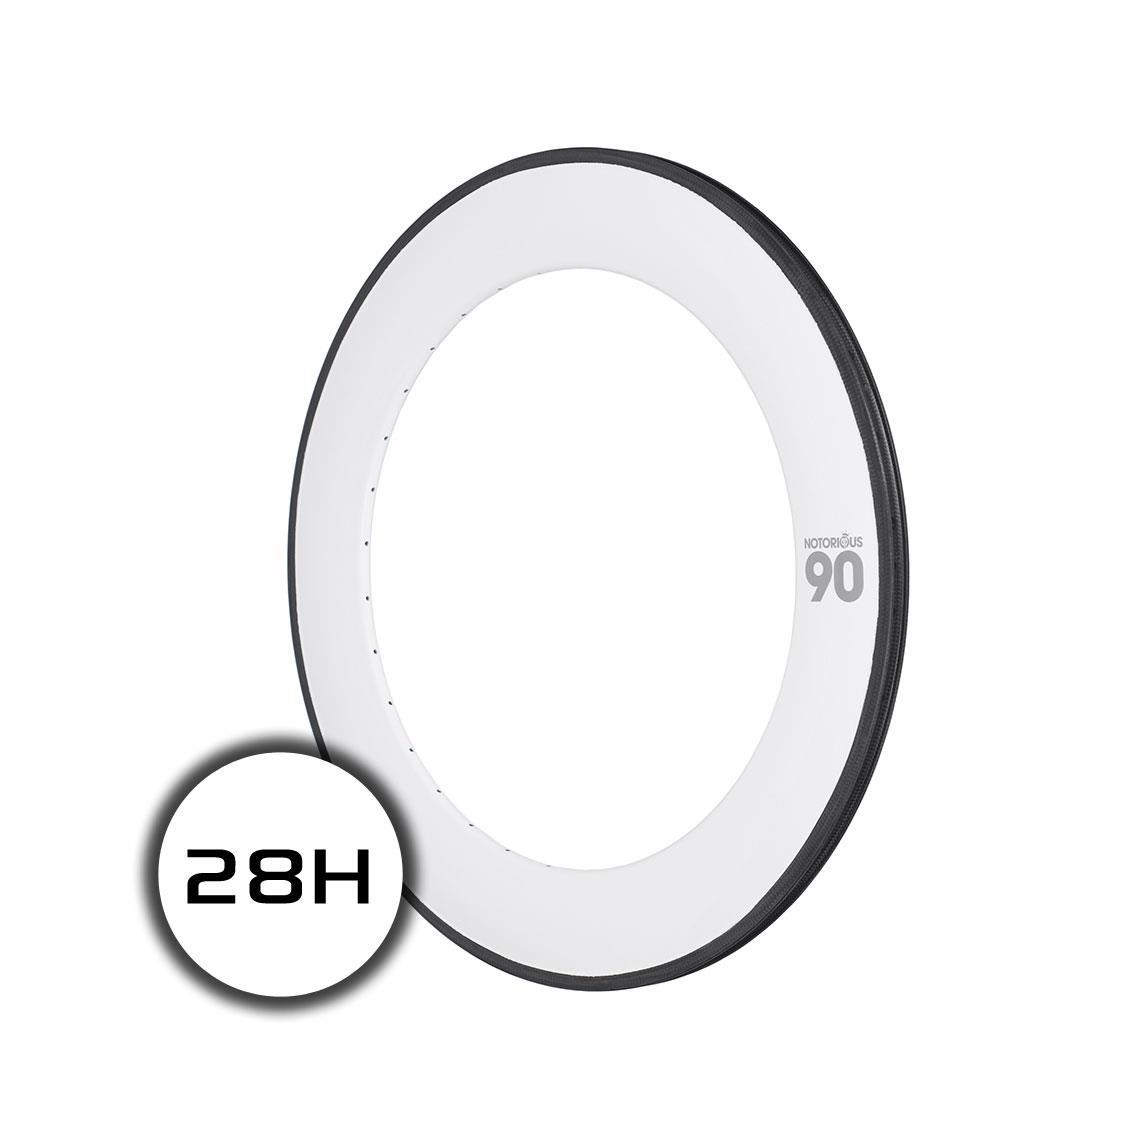 cerchio notorious 90 700c carbon 28h msw bianco